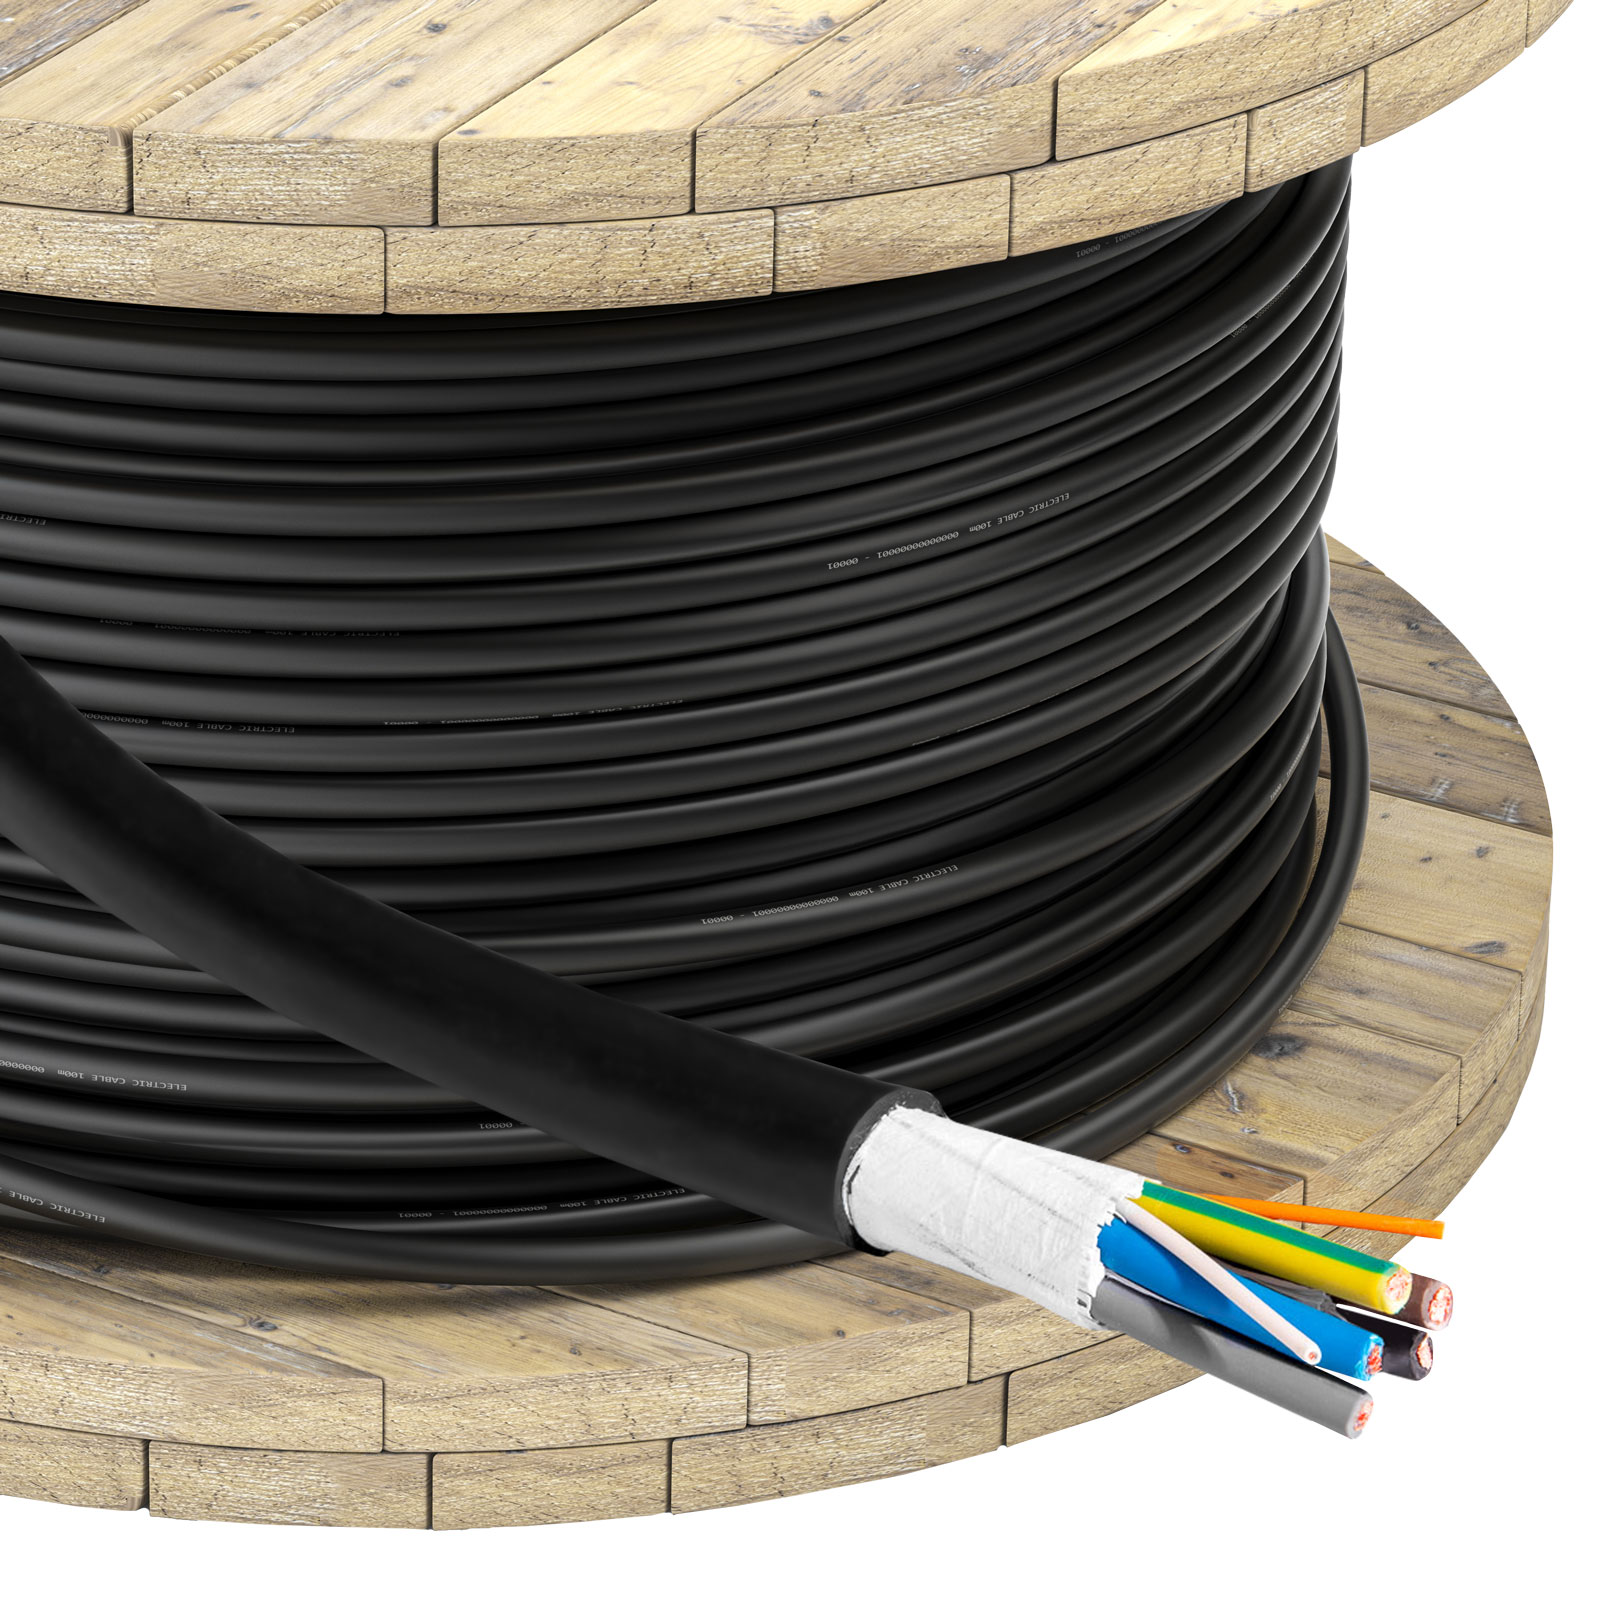 Main image EV Power Cable Akyga AK-SC-E12 CU 5x6mm² + 2x0.5mm² 3-phases 32A 450/750V per meter